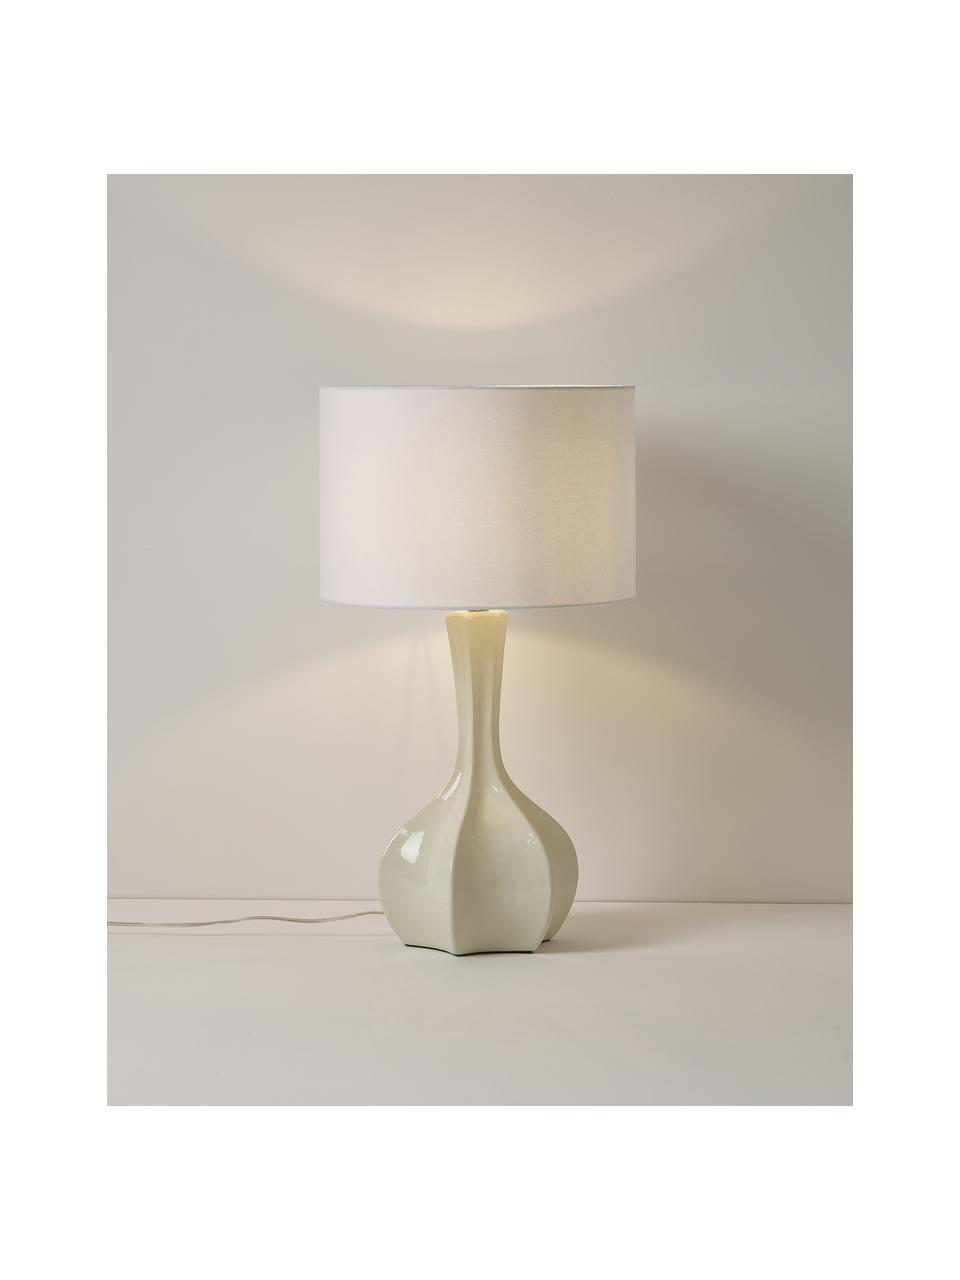 Große Tischlampe Kash mit Keramikfuß, Lampenschirm: Leinen, Lampenfuß: Keramik, Weiß, Cremeweiß, Ø 38 x H 68 cm